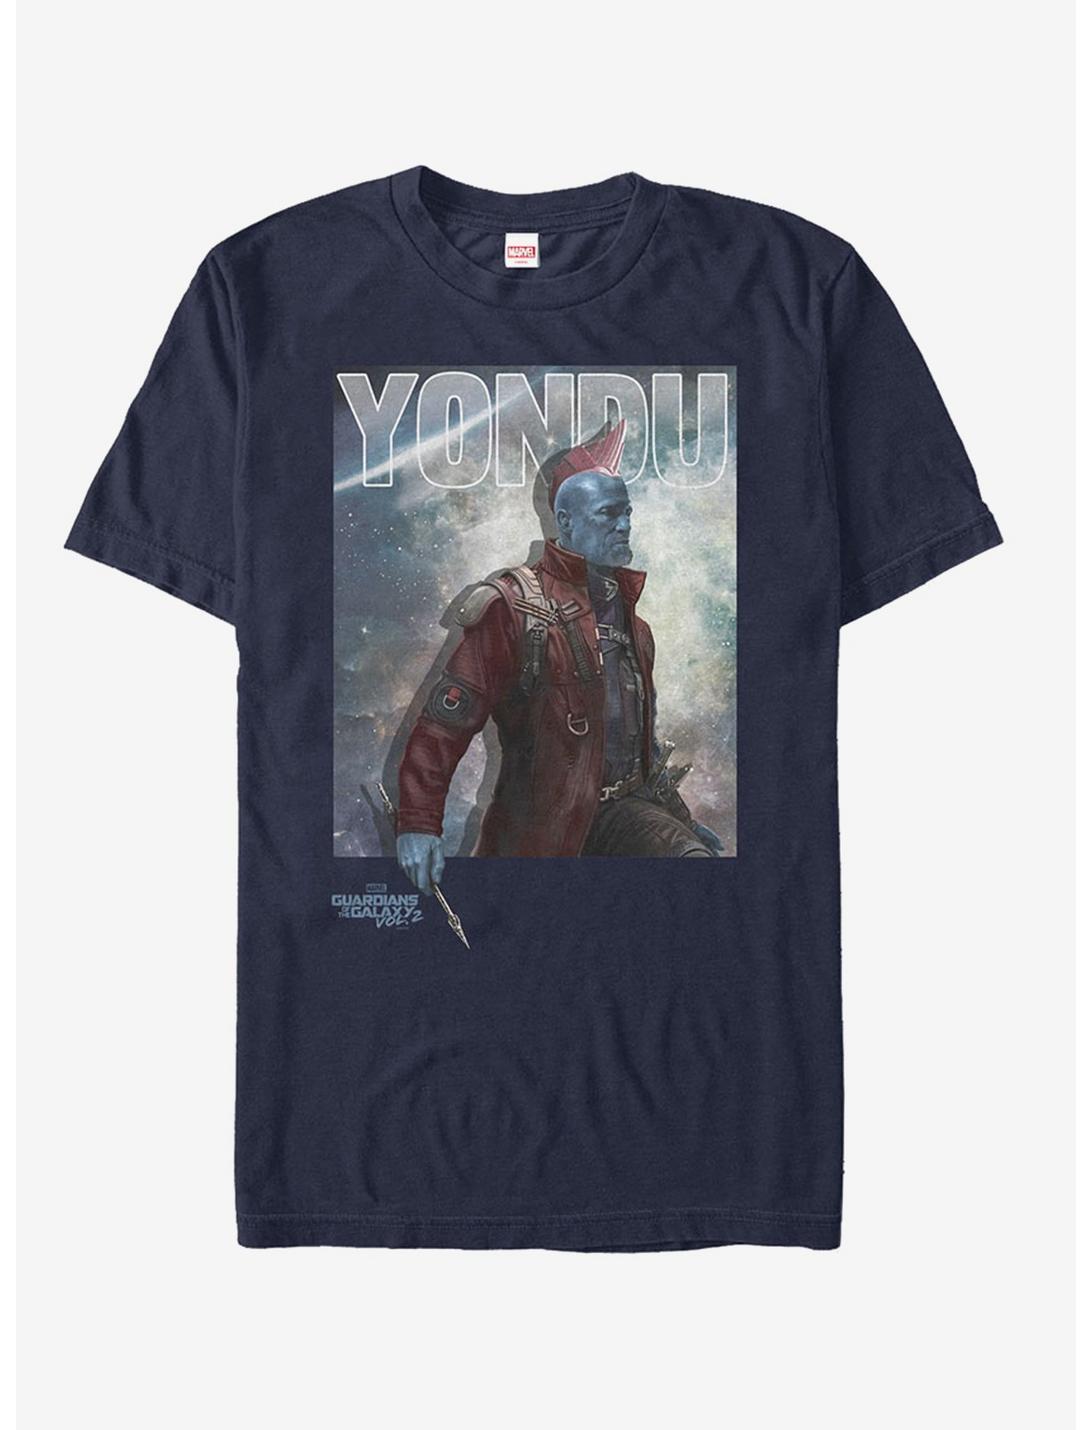 Plus Size Marvel Yondu Arrow T-Shirt, NAVY, hi-res